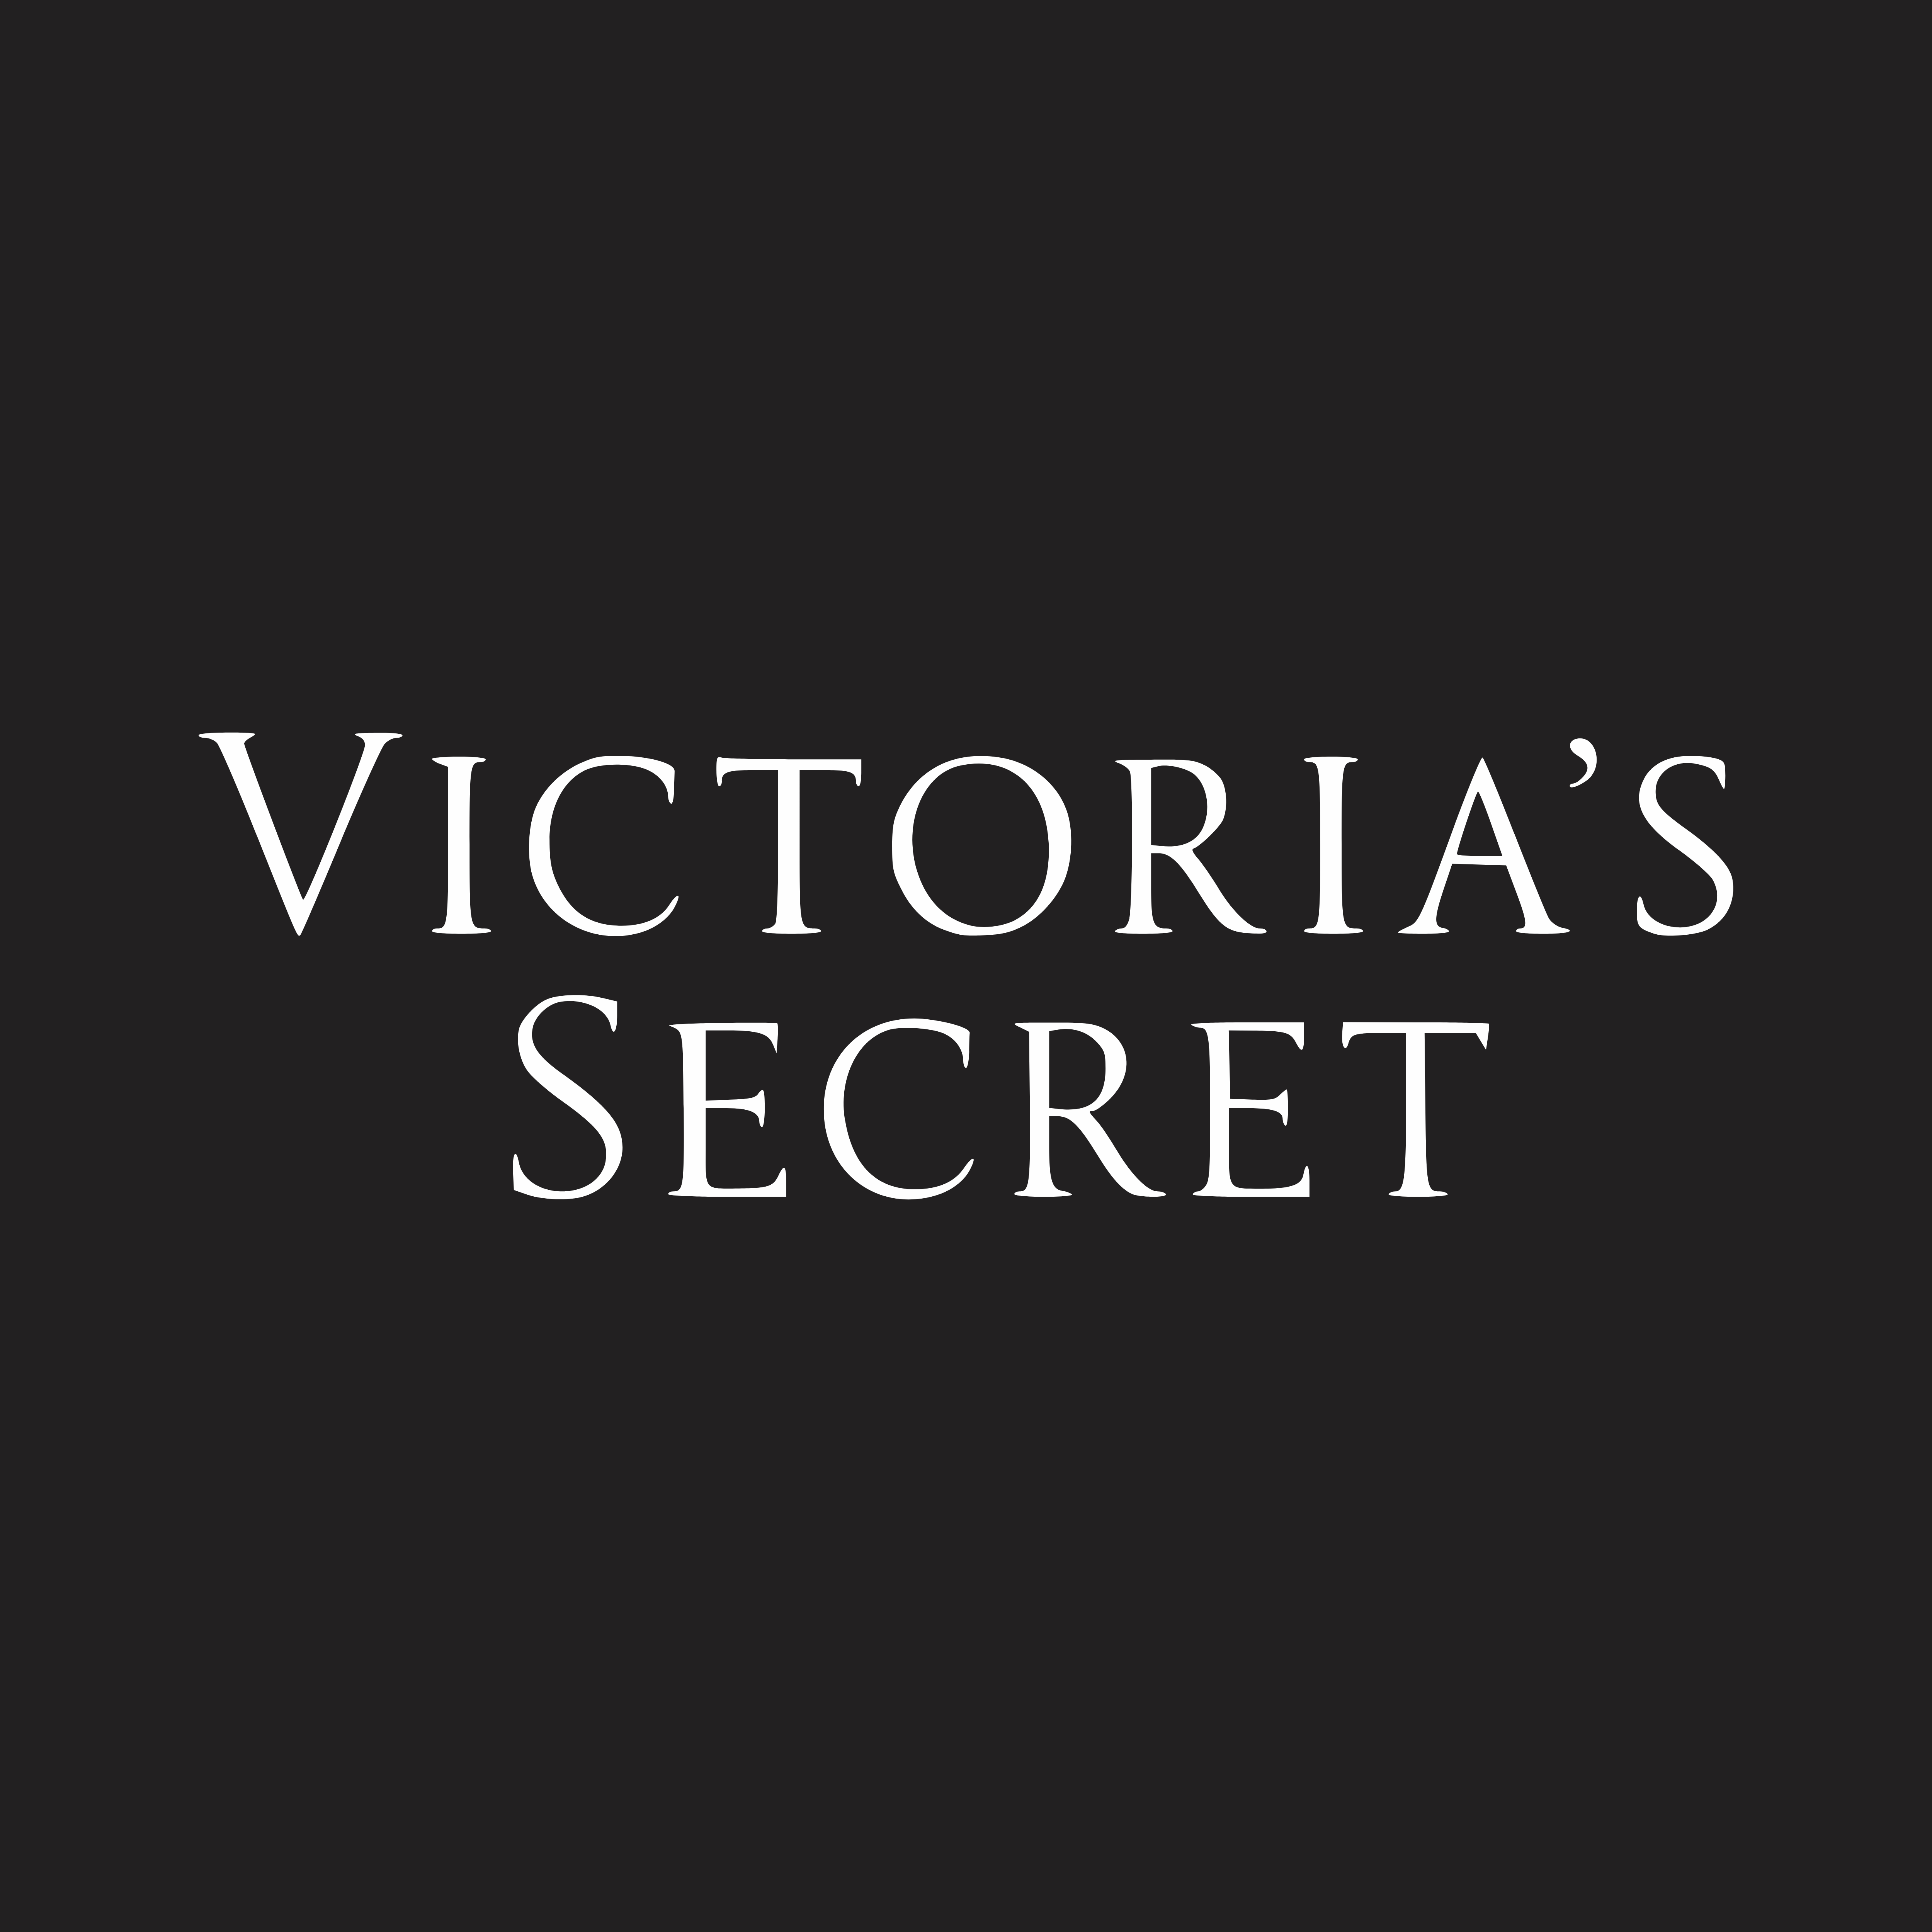 Victoria's Secret Careers